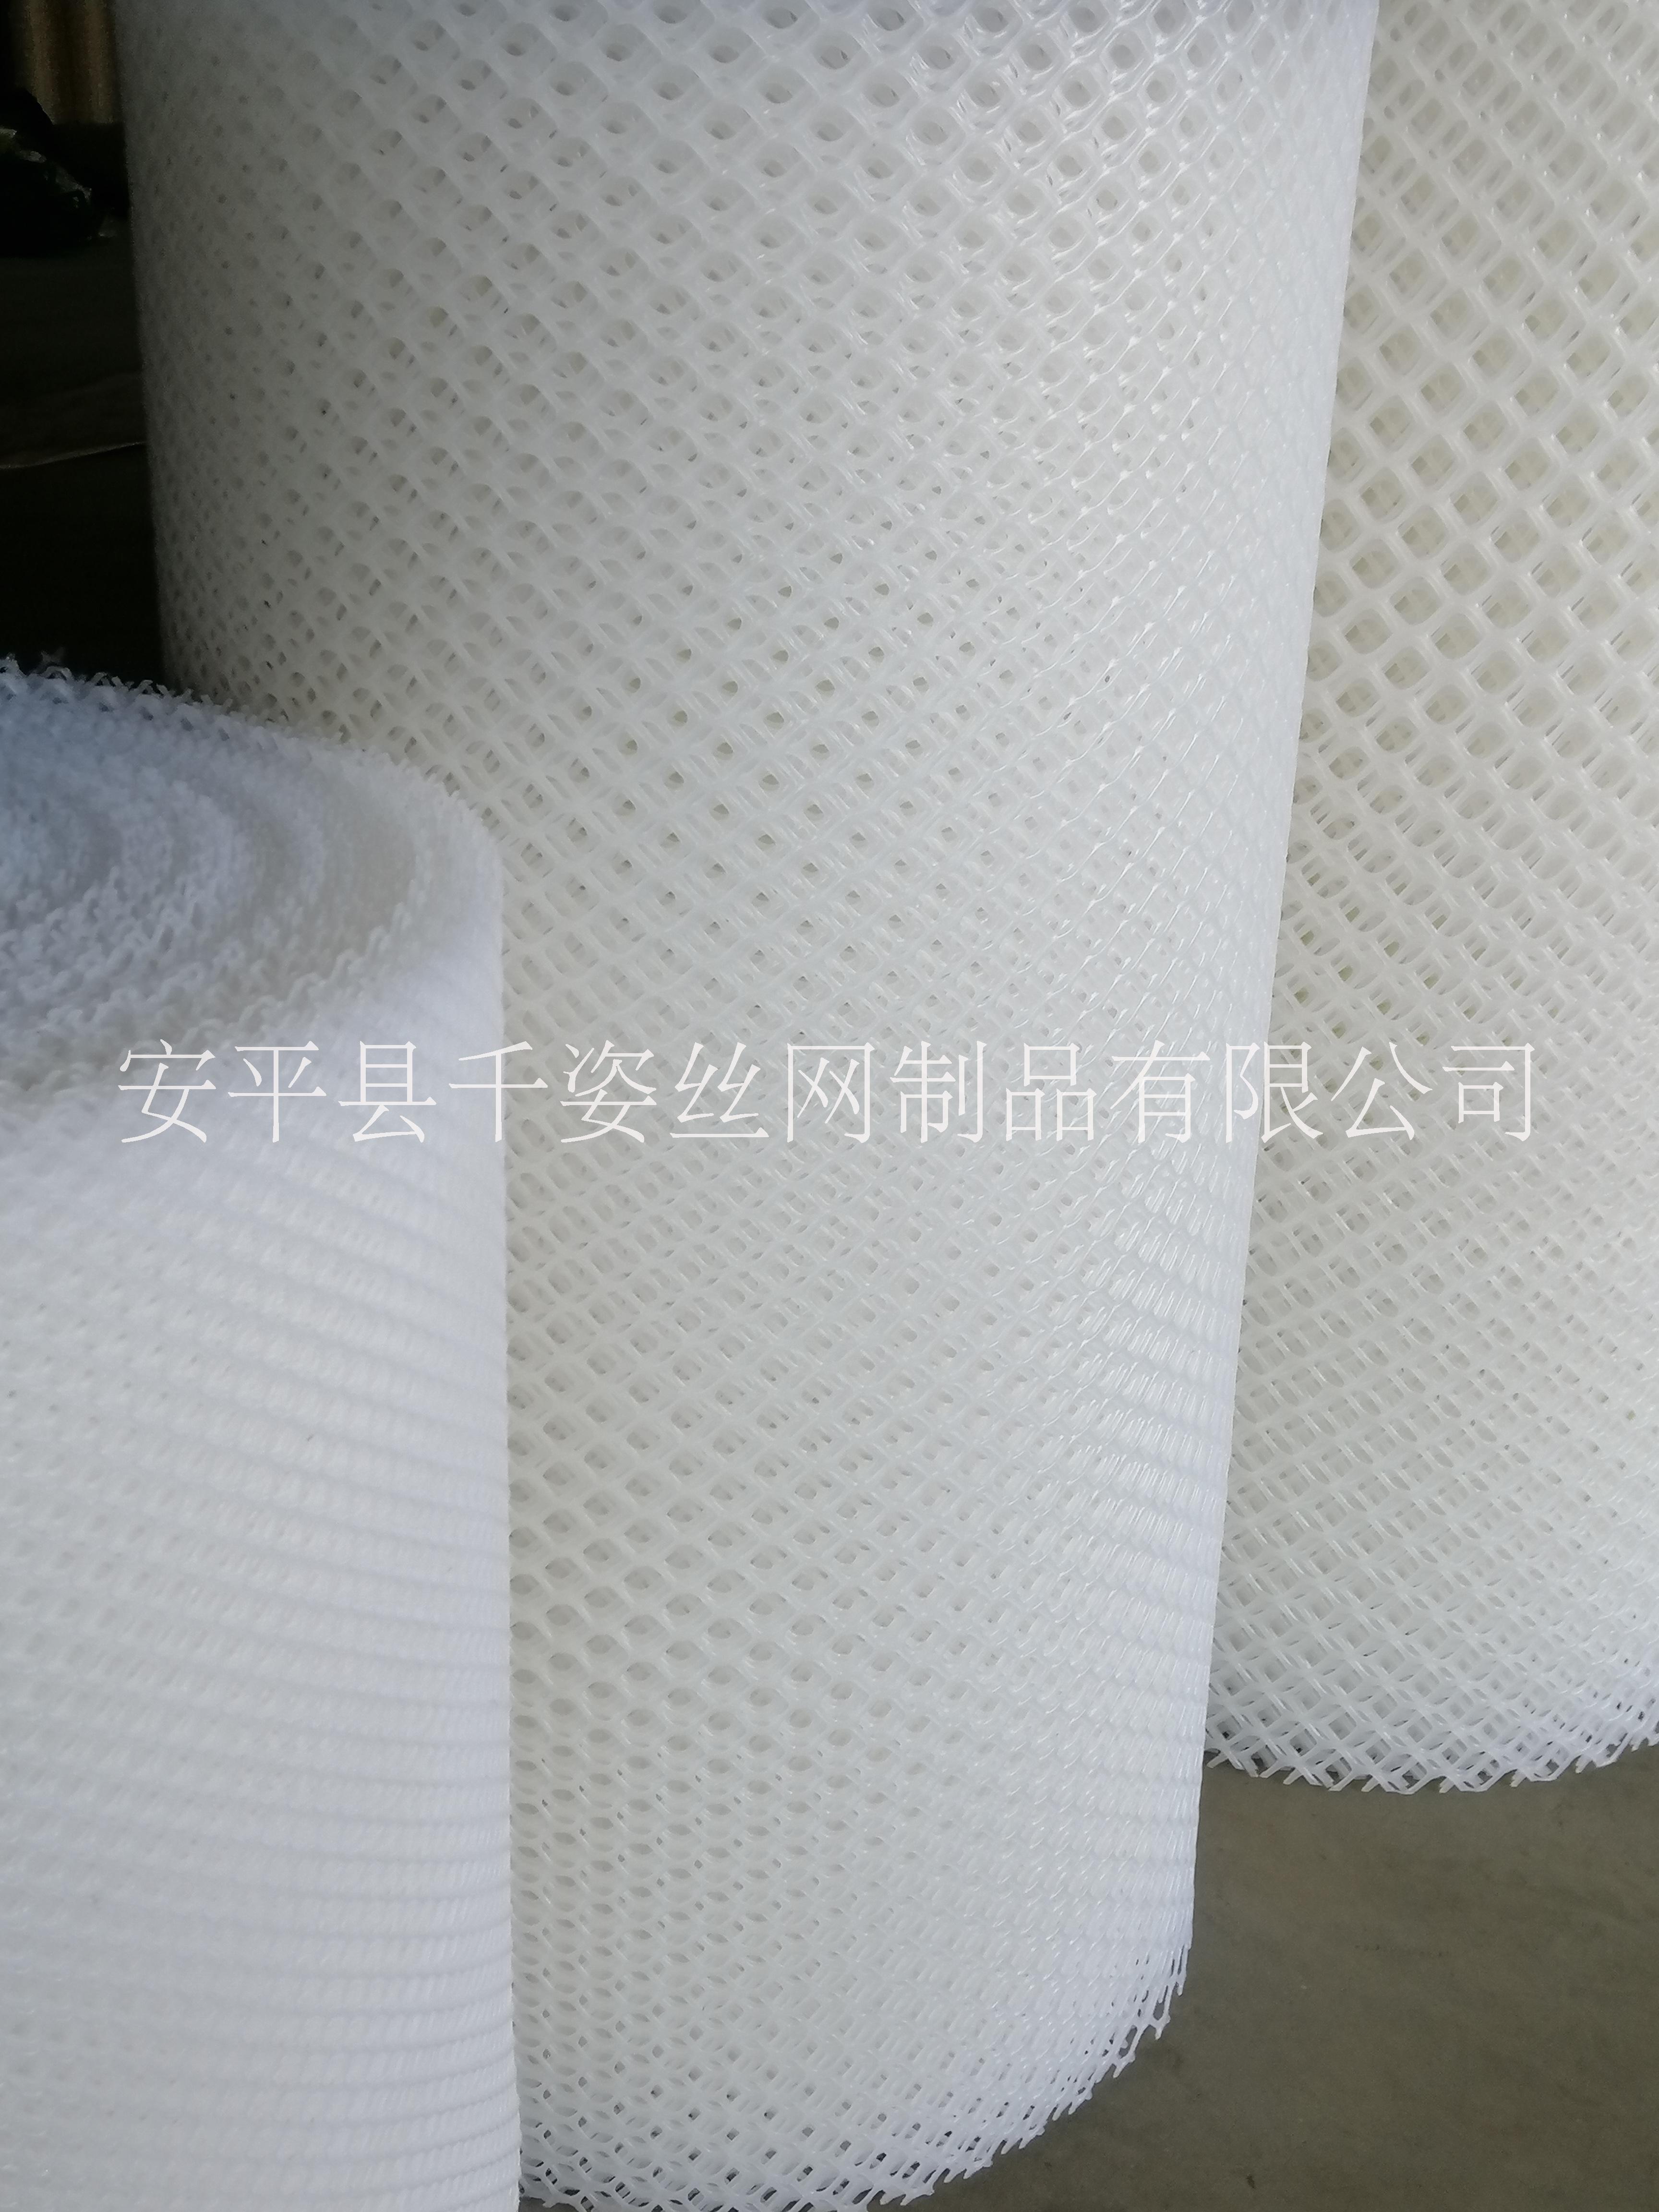 广东塑料网厂家供应价格实惠加工定做联系电话